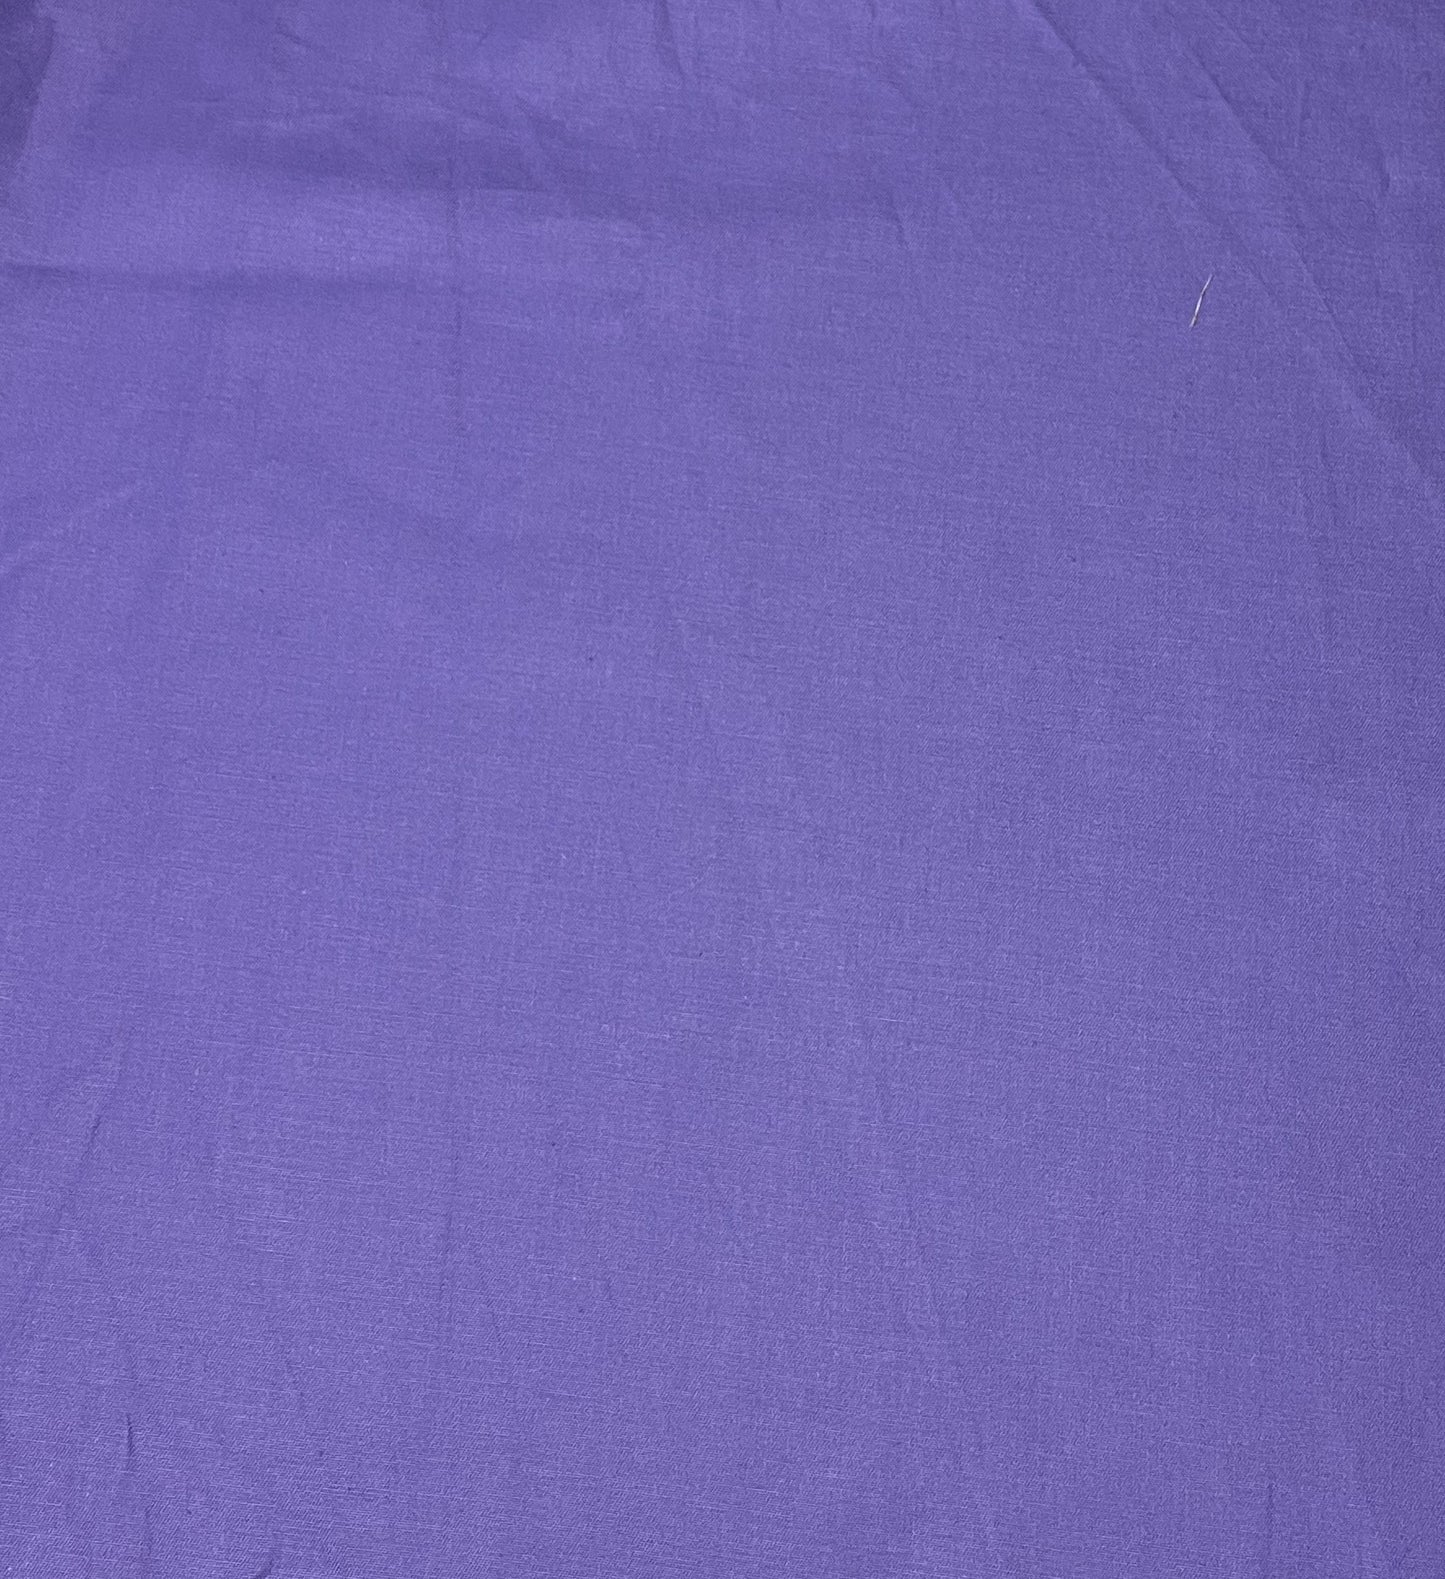 Purple floral precut bundle